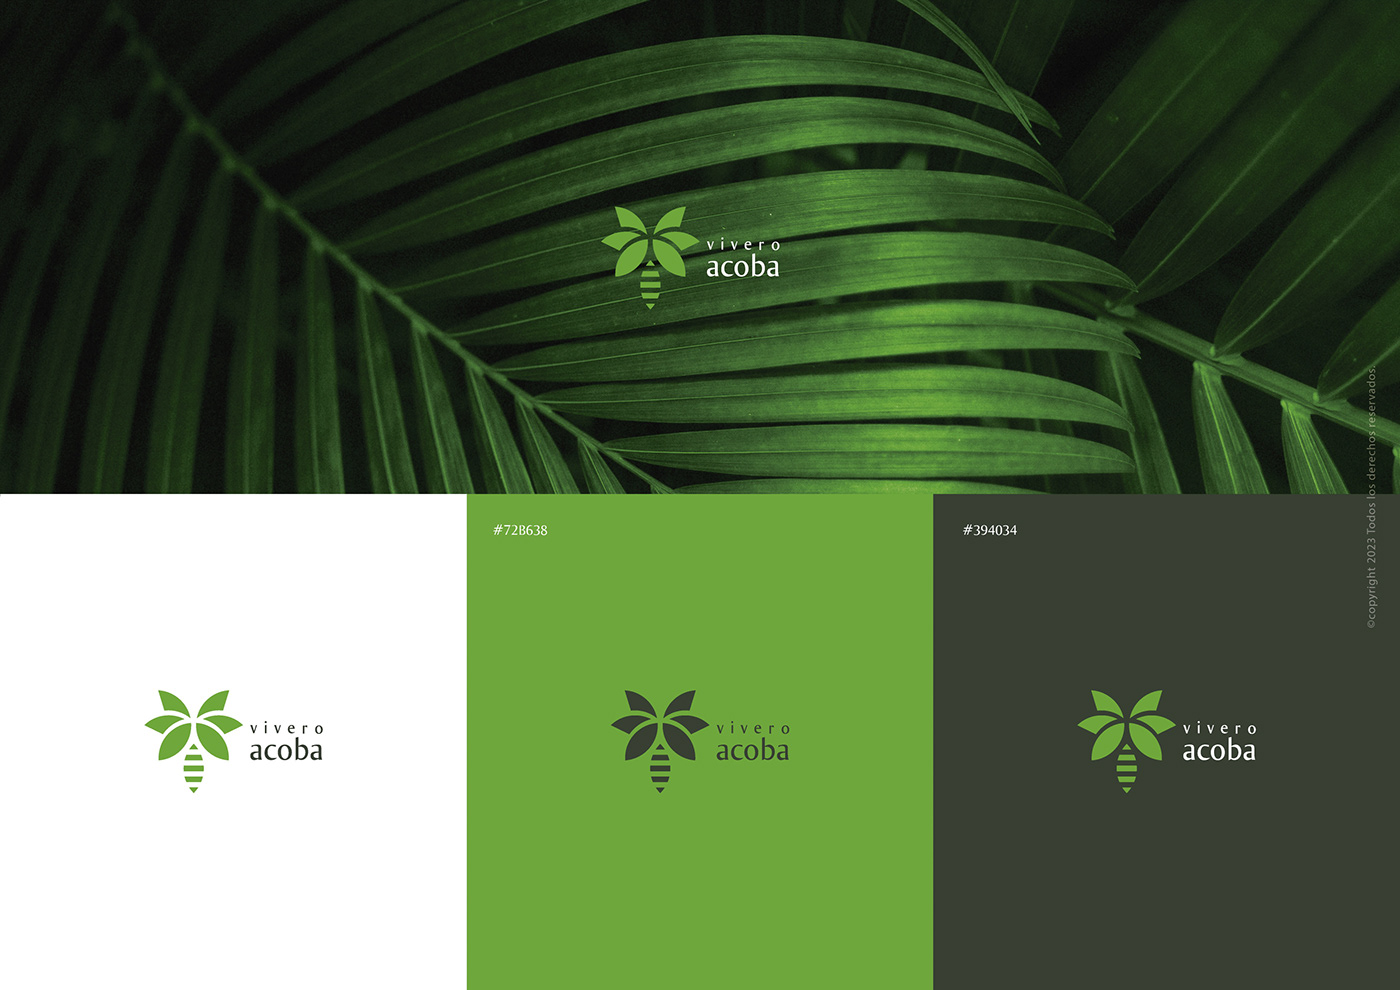 Plant Vivero Manual de Identidad Manual de Marca branding  Creación de marca Logotipo logos brand identity visual